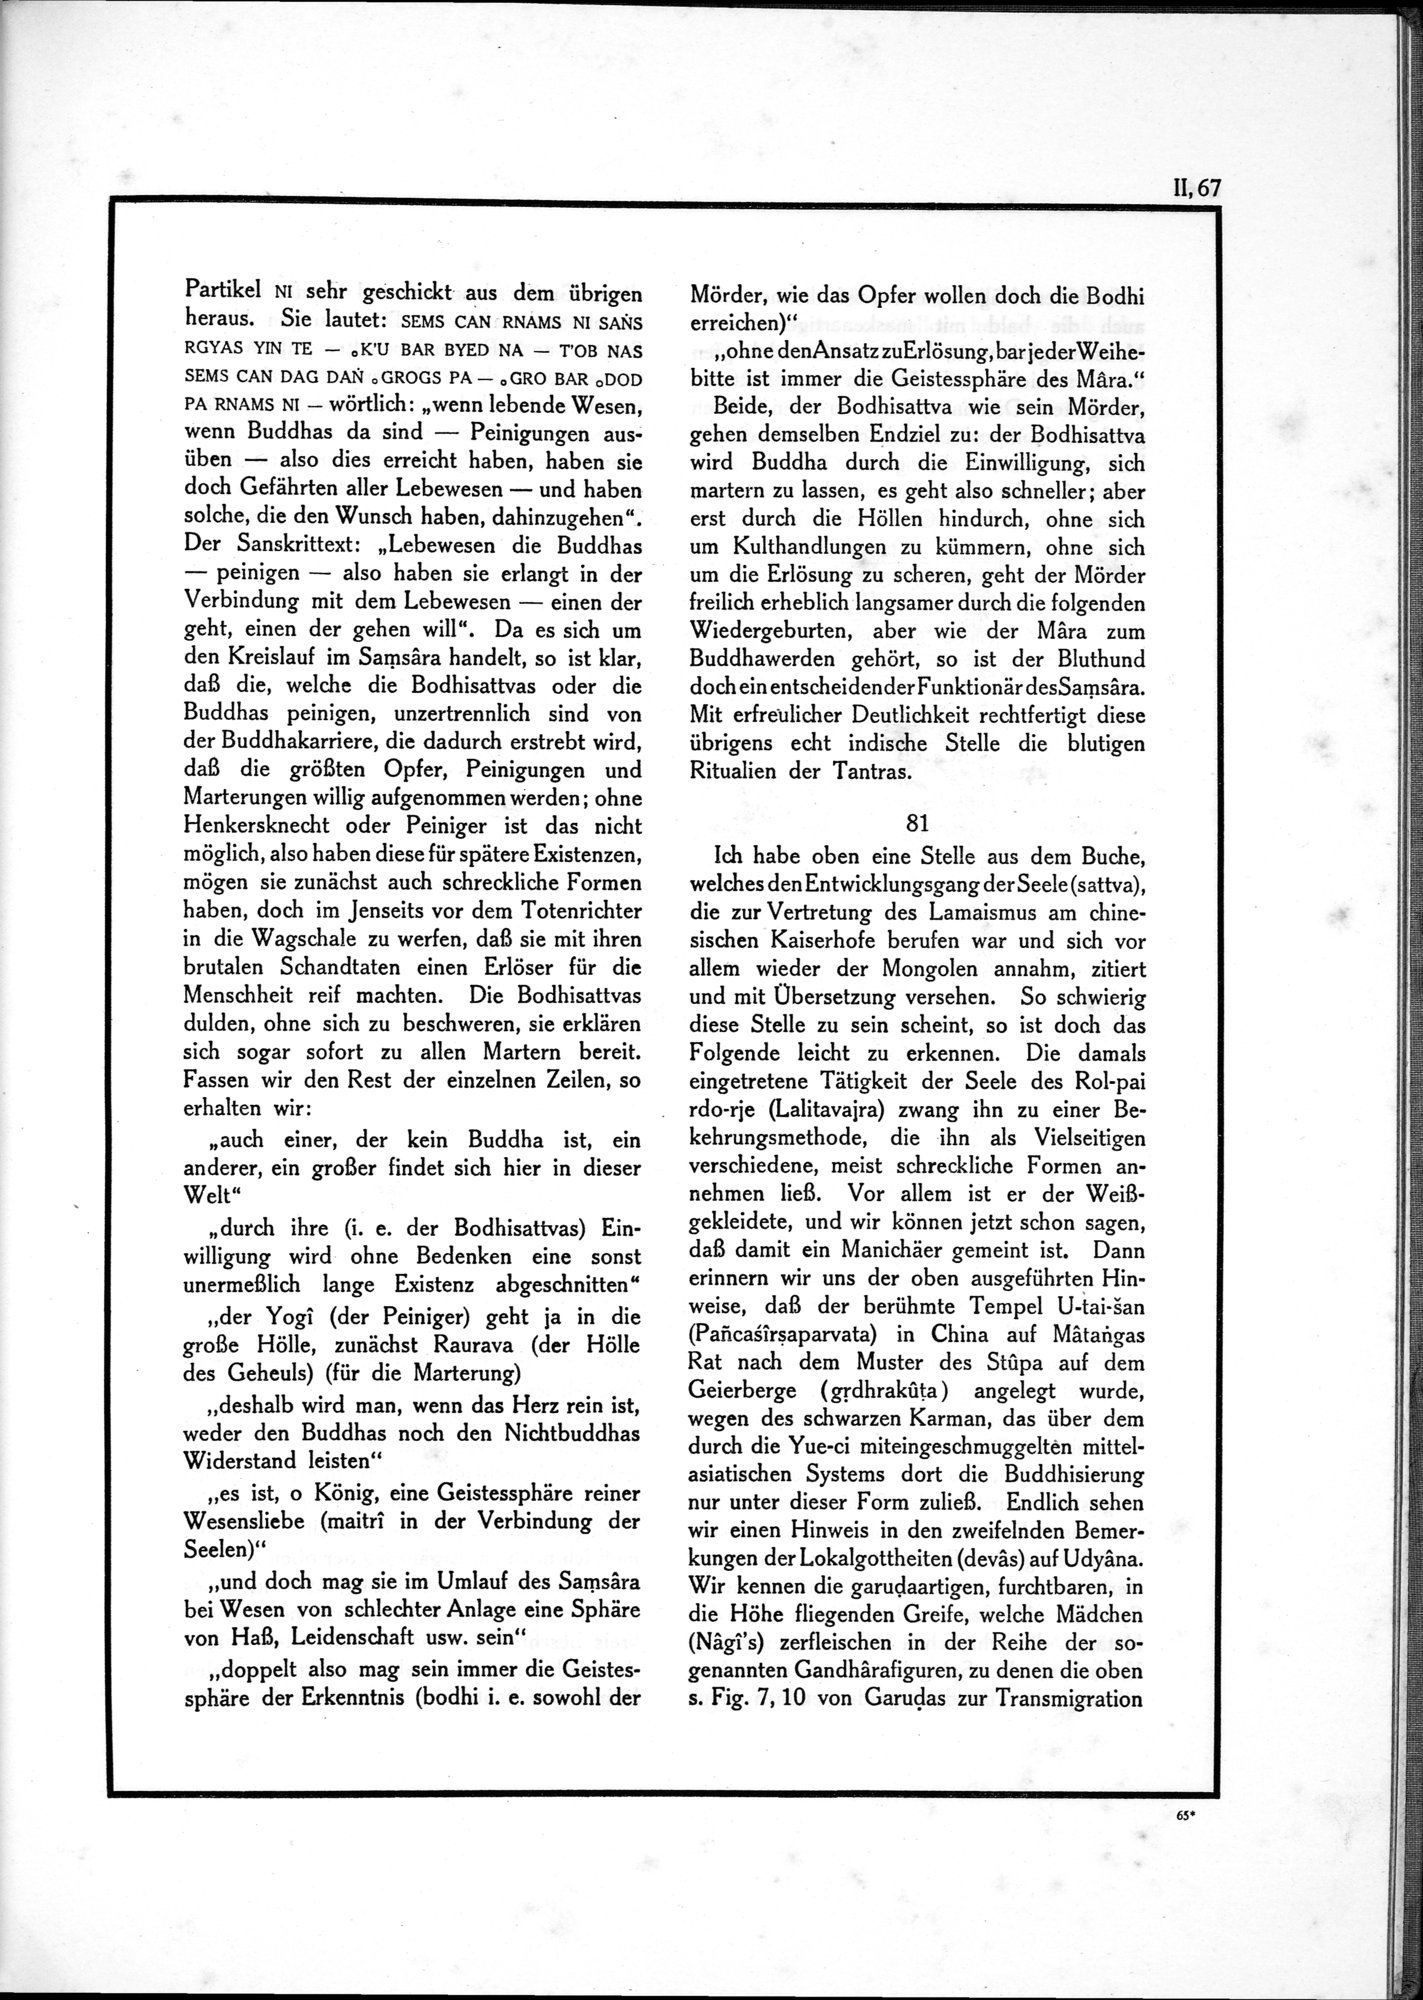 Die Teufel des Avesta und Ihre Beziehungen zur Ikonographie des Buddhismus Zentral-Asiens : vol.1 / Page 523 (Grayscale High Resolution Image)